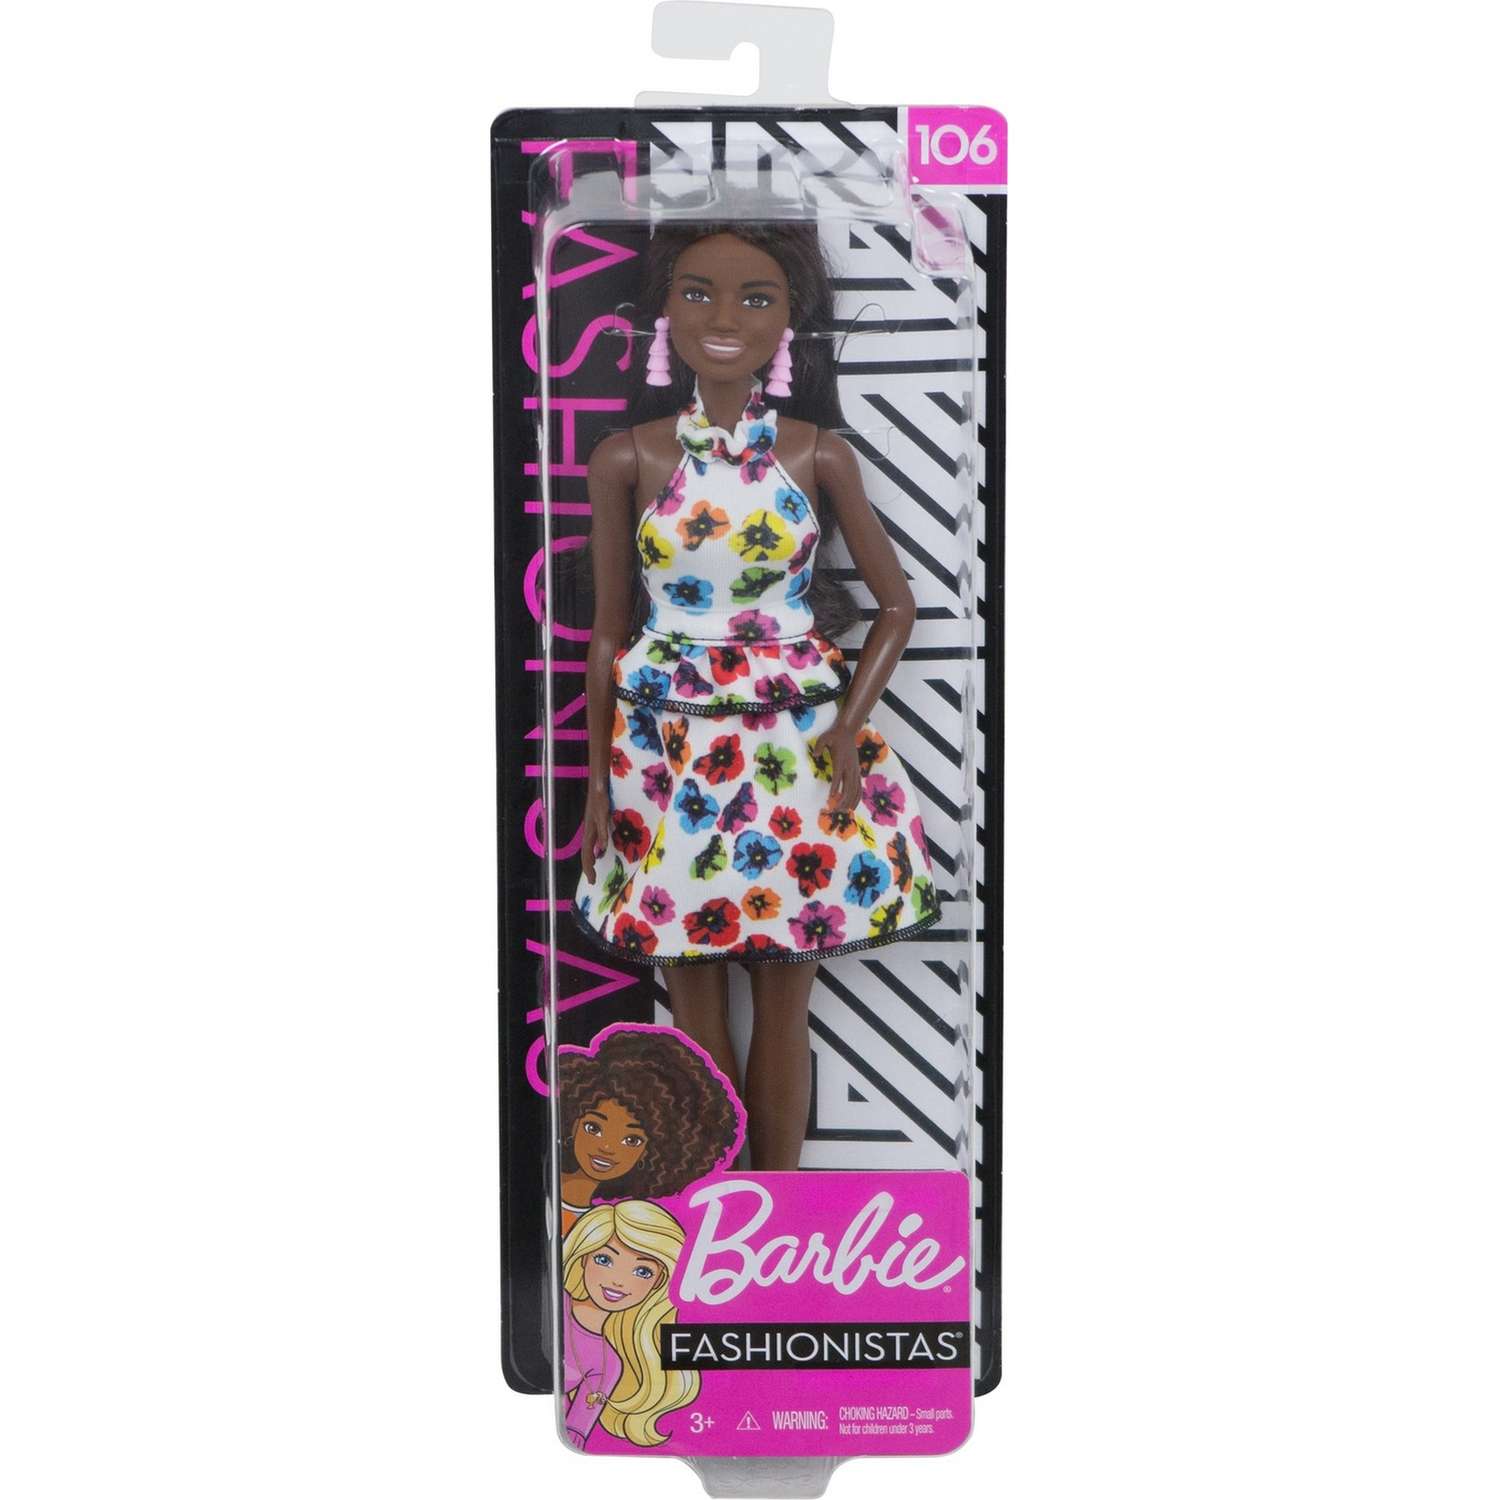 Кукла Barbie Игра с модой 106 FXL46 FBR37 - фото 2